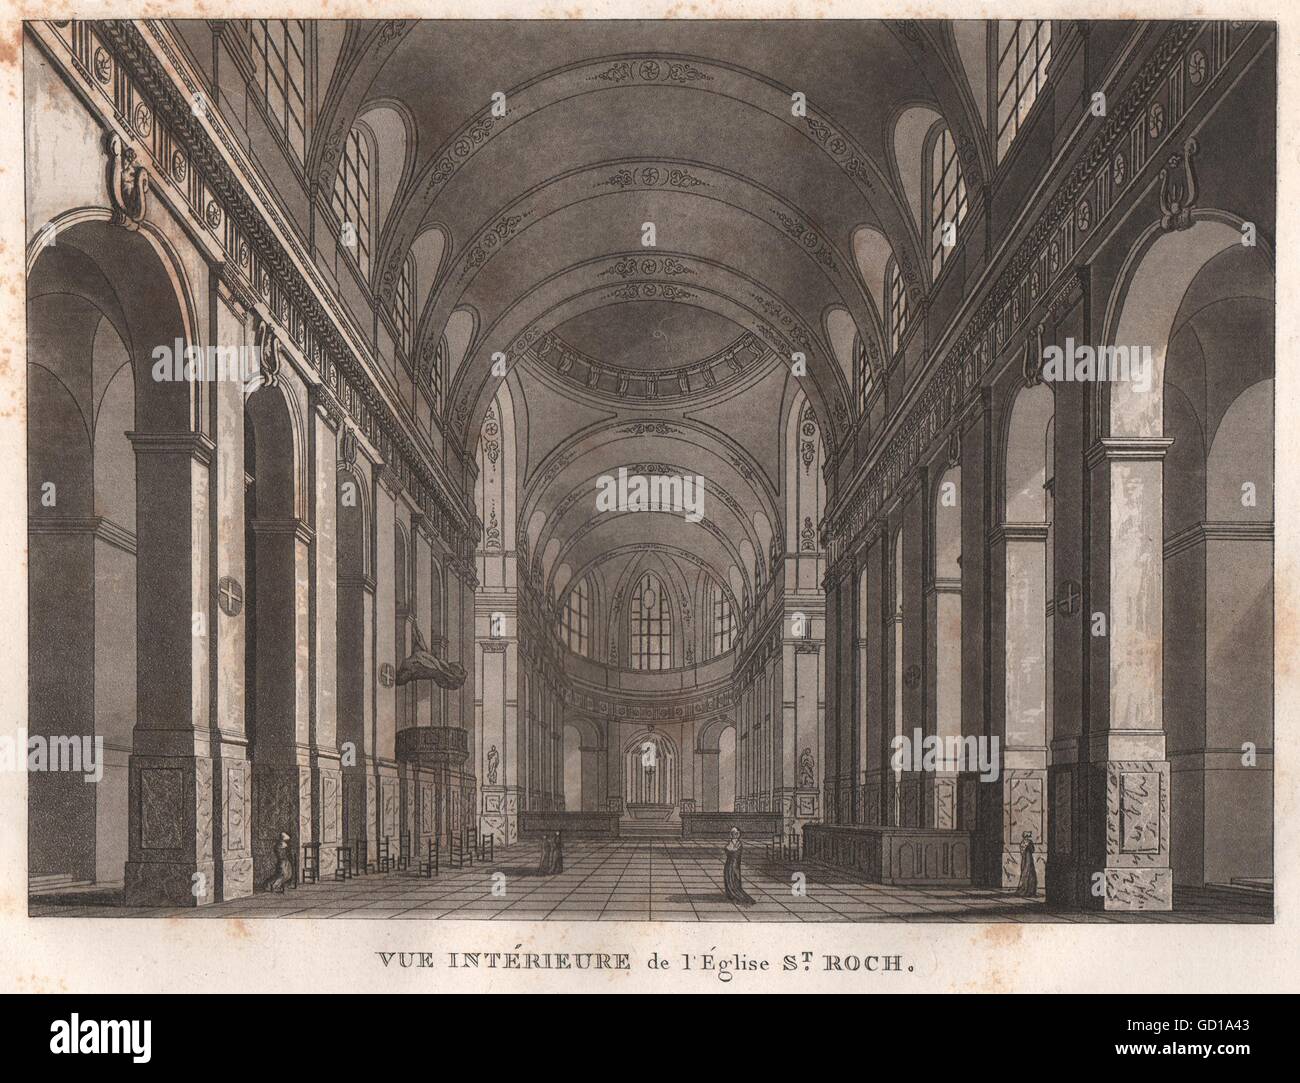 PARIS: Eglise Saint-Roch. Intérieure. Aquatint, antique print 1808 Stock Photo